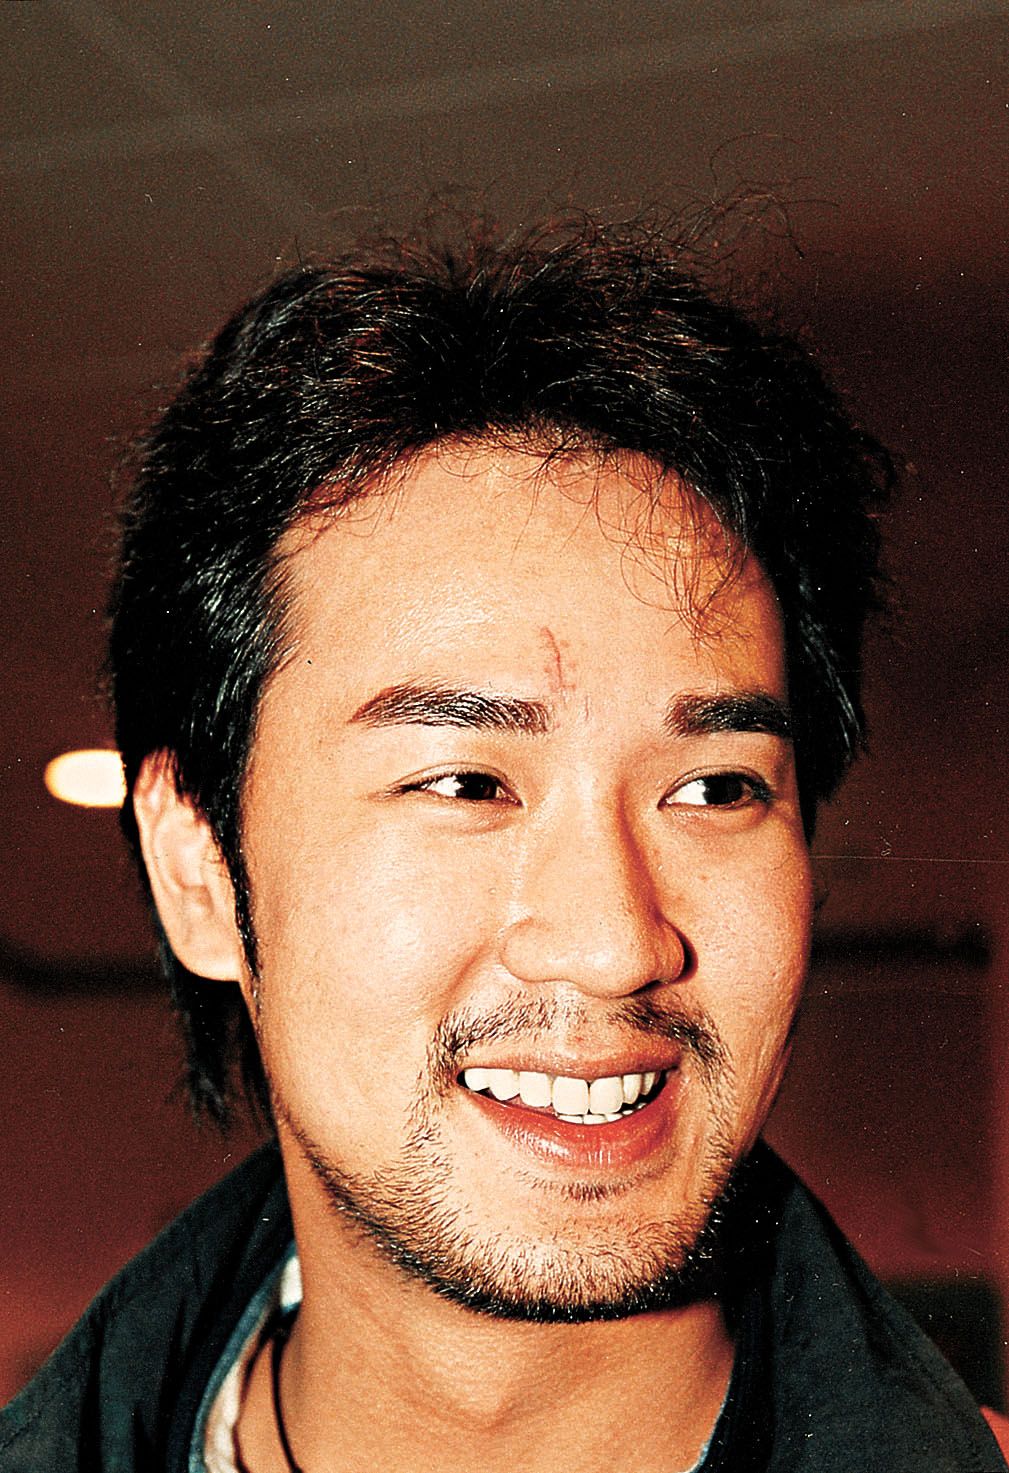 2000年，盧慶輝於澳門disco與有勢力人士爭執，眉心位置縫咗20針。